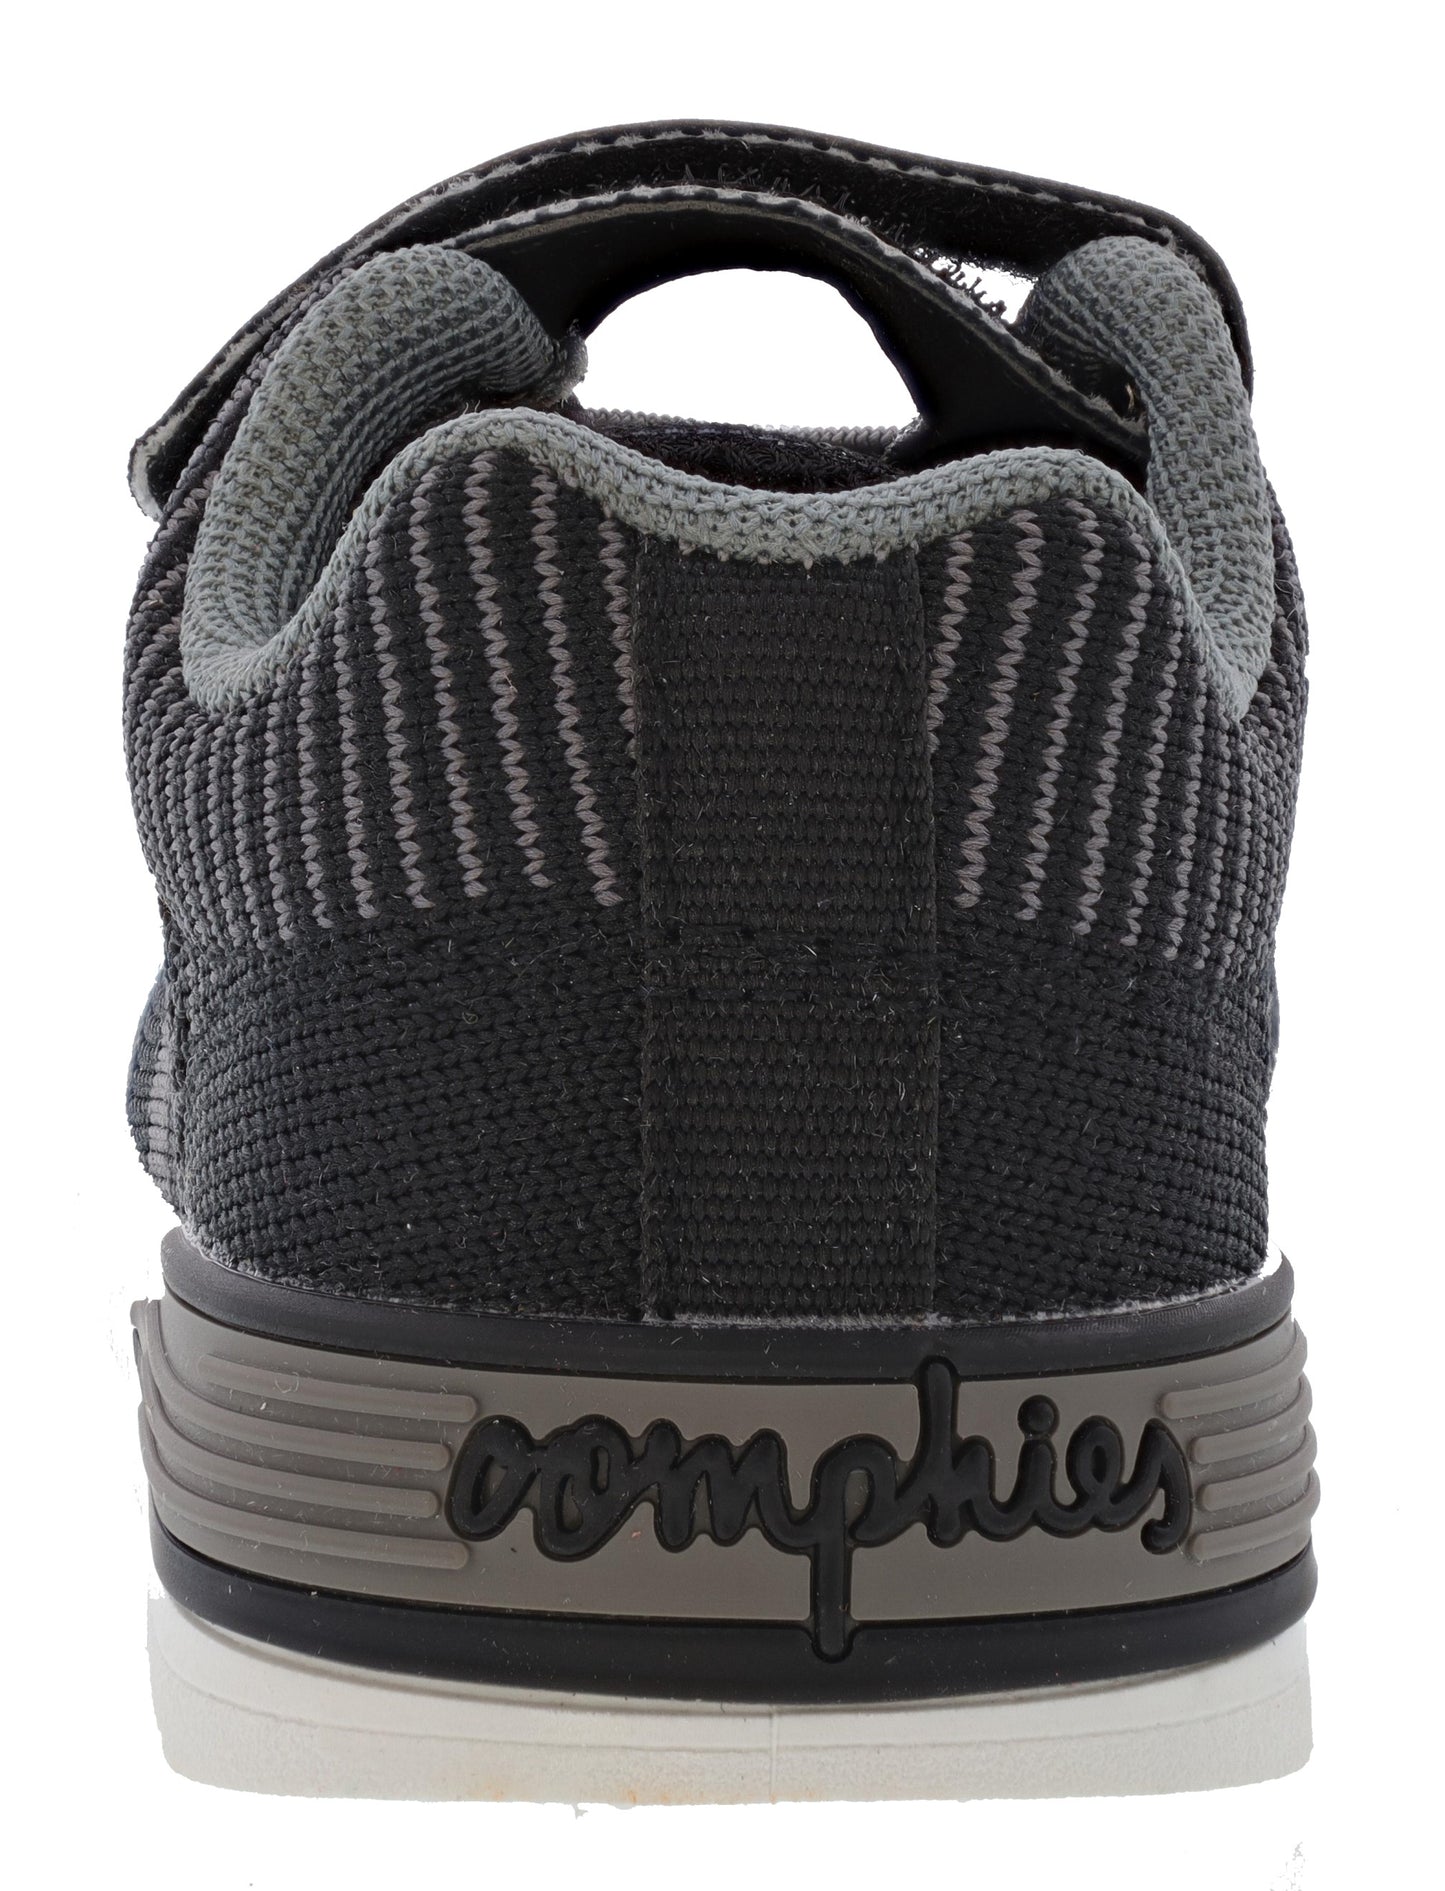 
                  
                    Oomphies Toddler's Wynn Lightweight Hook and Loop Sneakers
                  
                